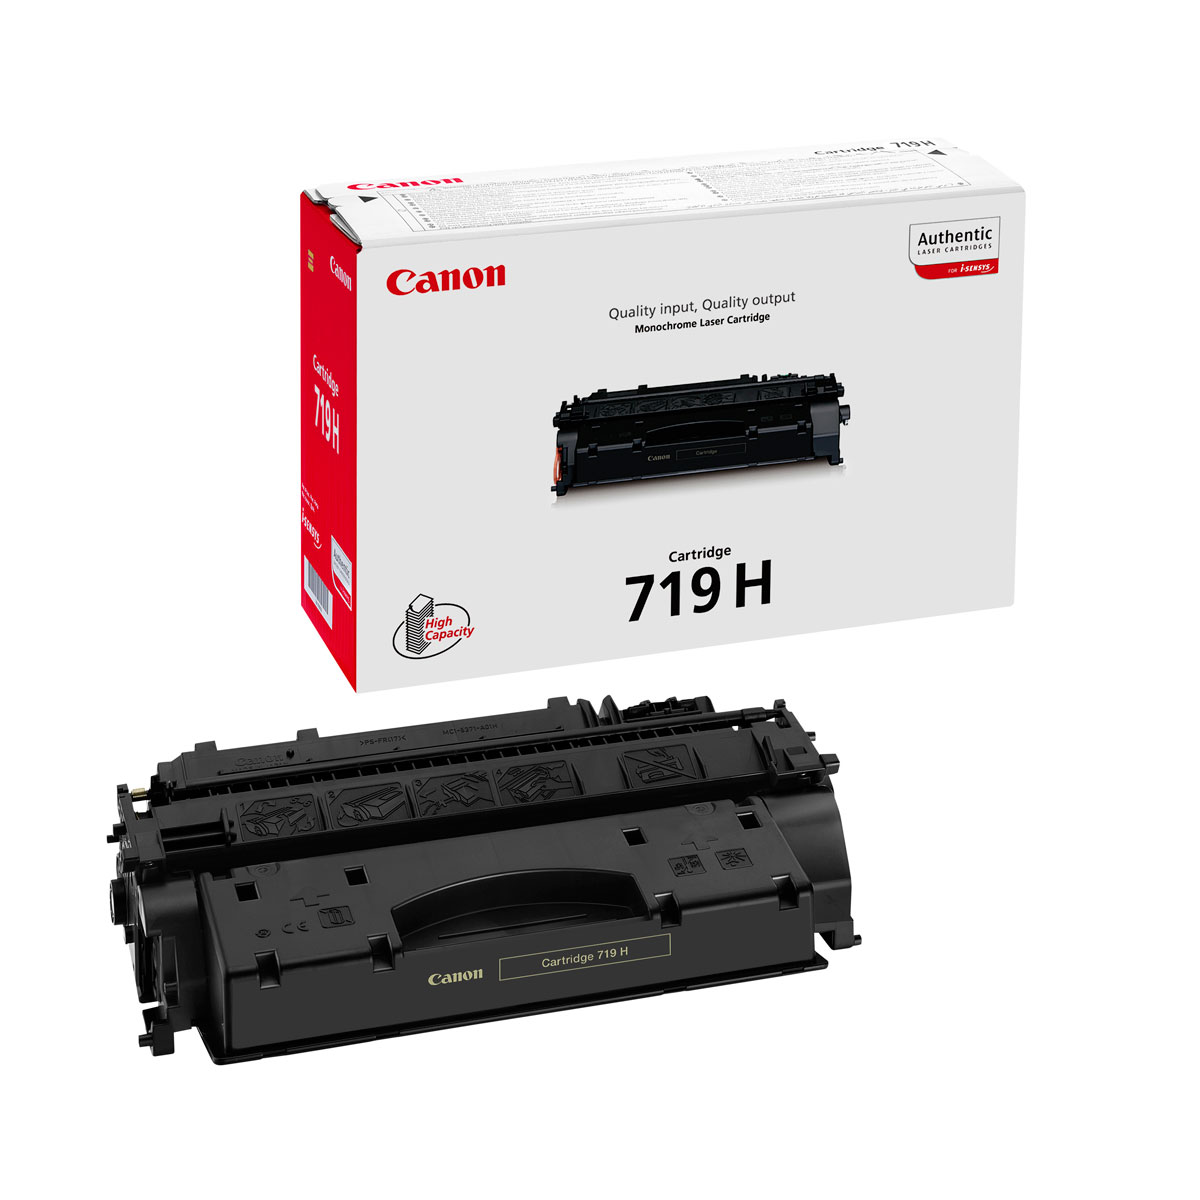 Toner Noir CRG 719 H 6400p - 3480B002 pour imprimante Laser Canon - 0